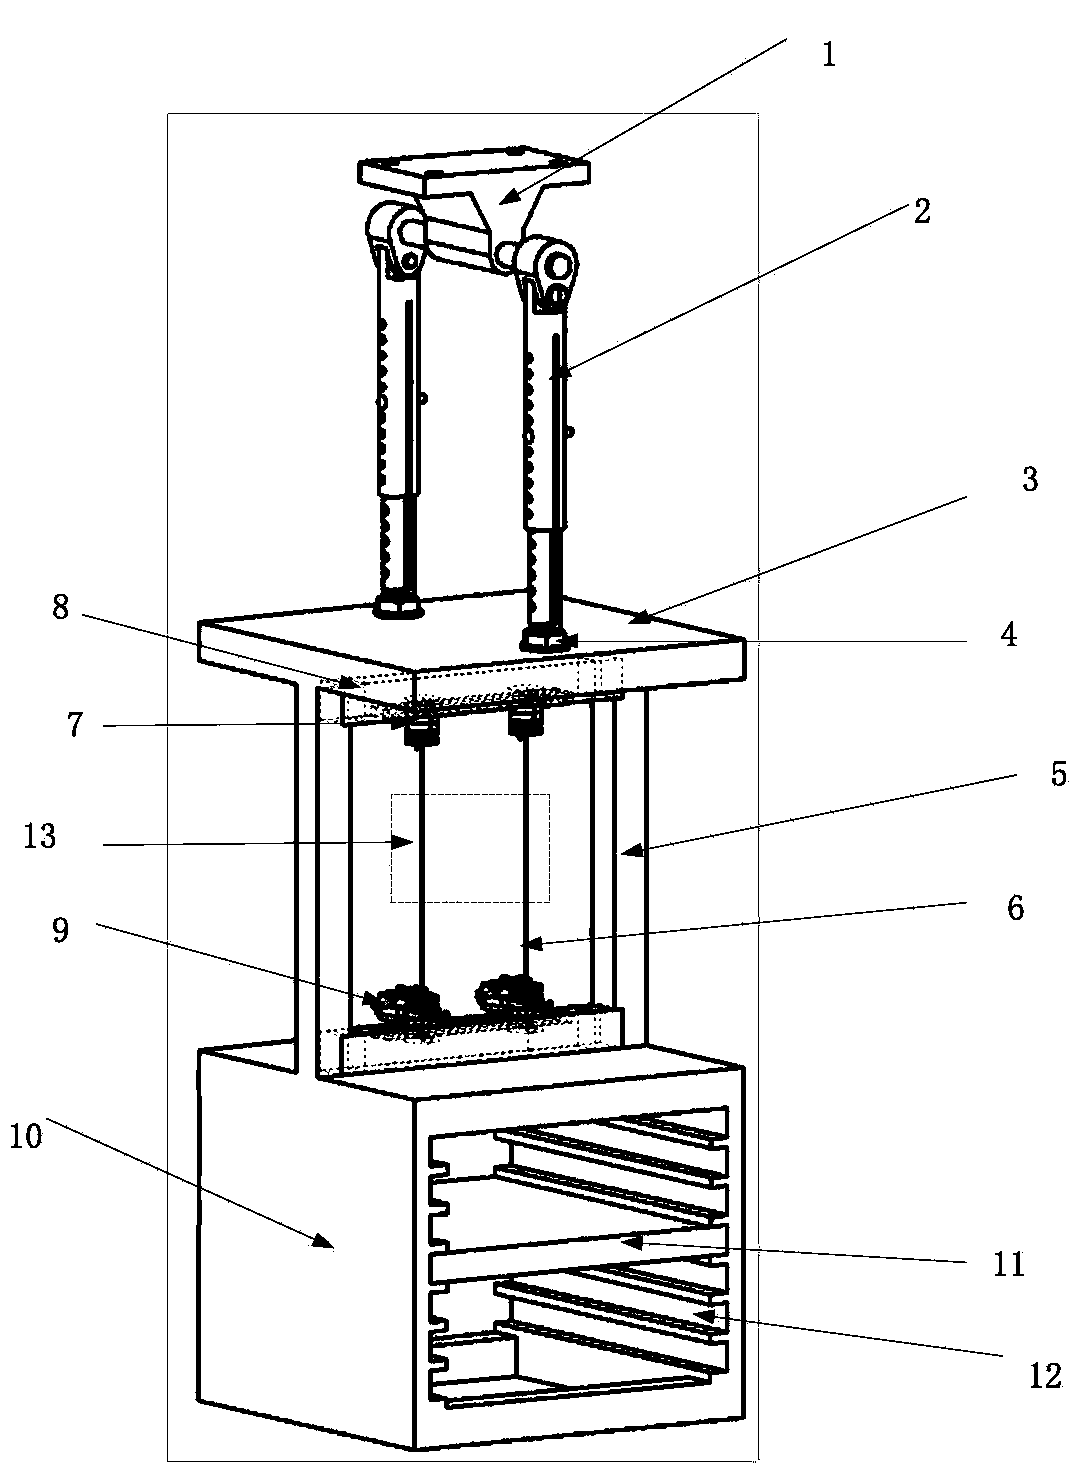 Pendulum clock type velvet effect experimental apparatus